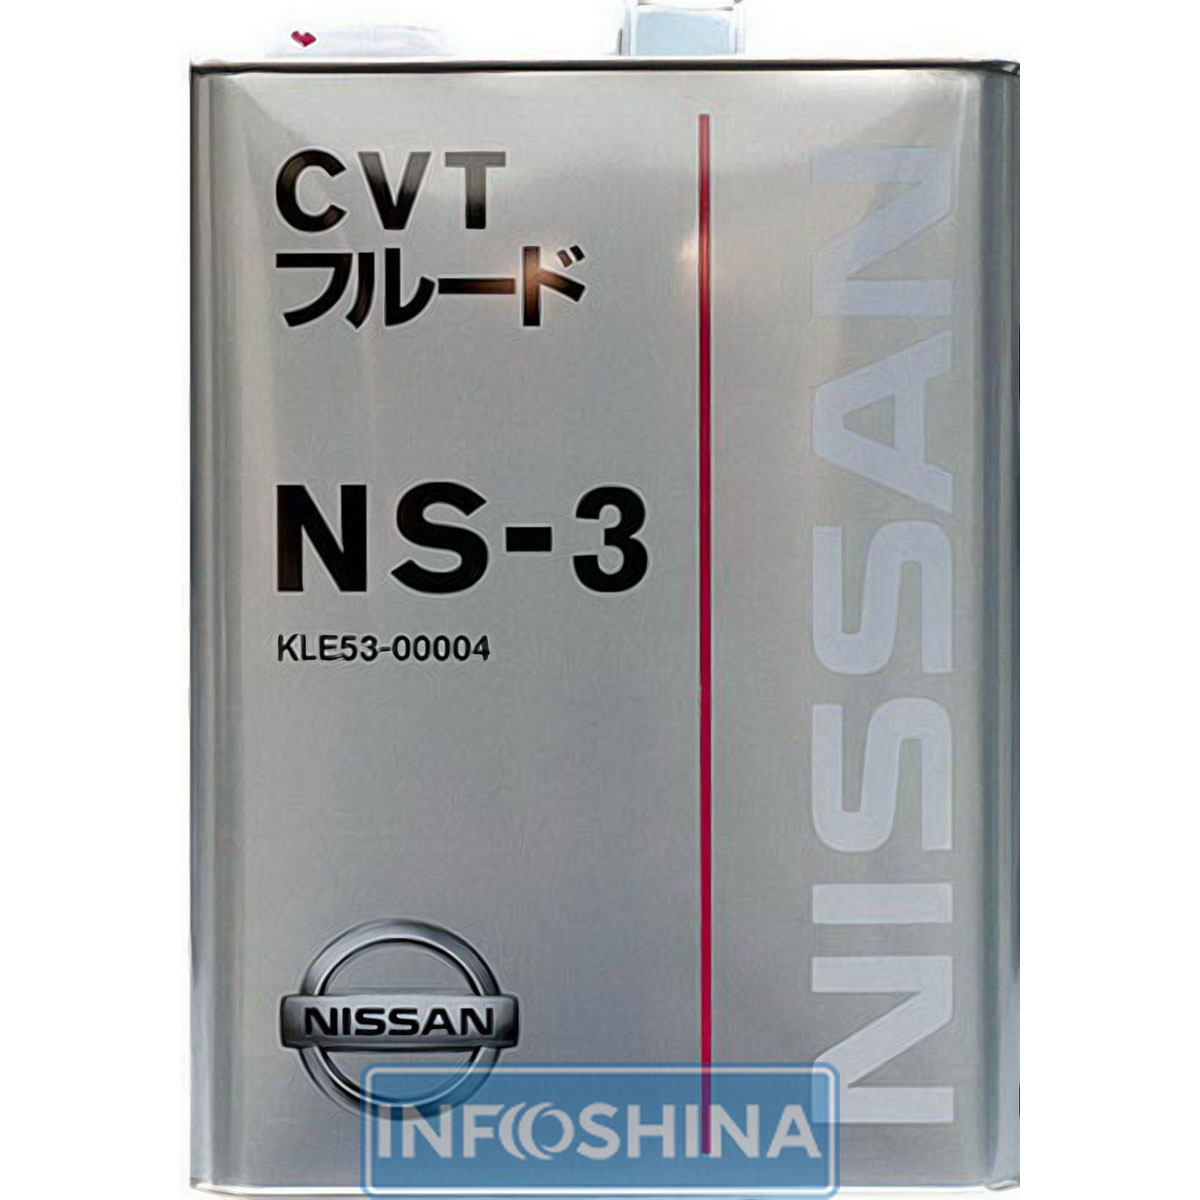 Купить масло Nissan CVT NS-3 (4л)